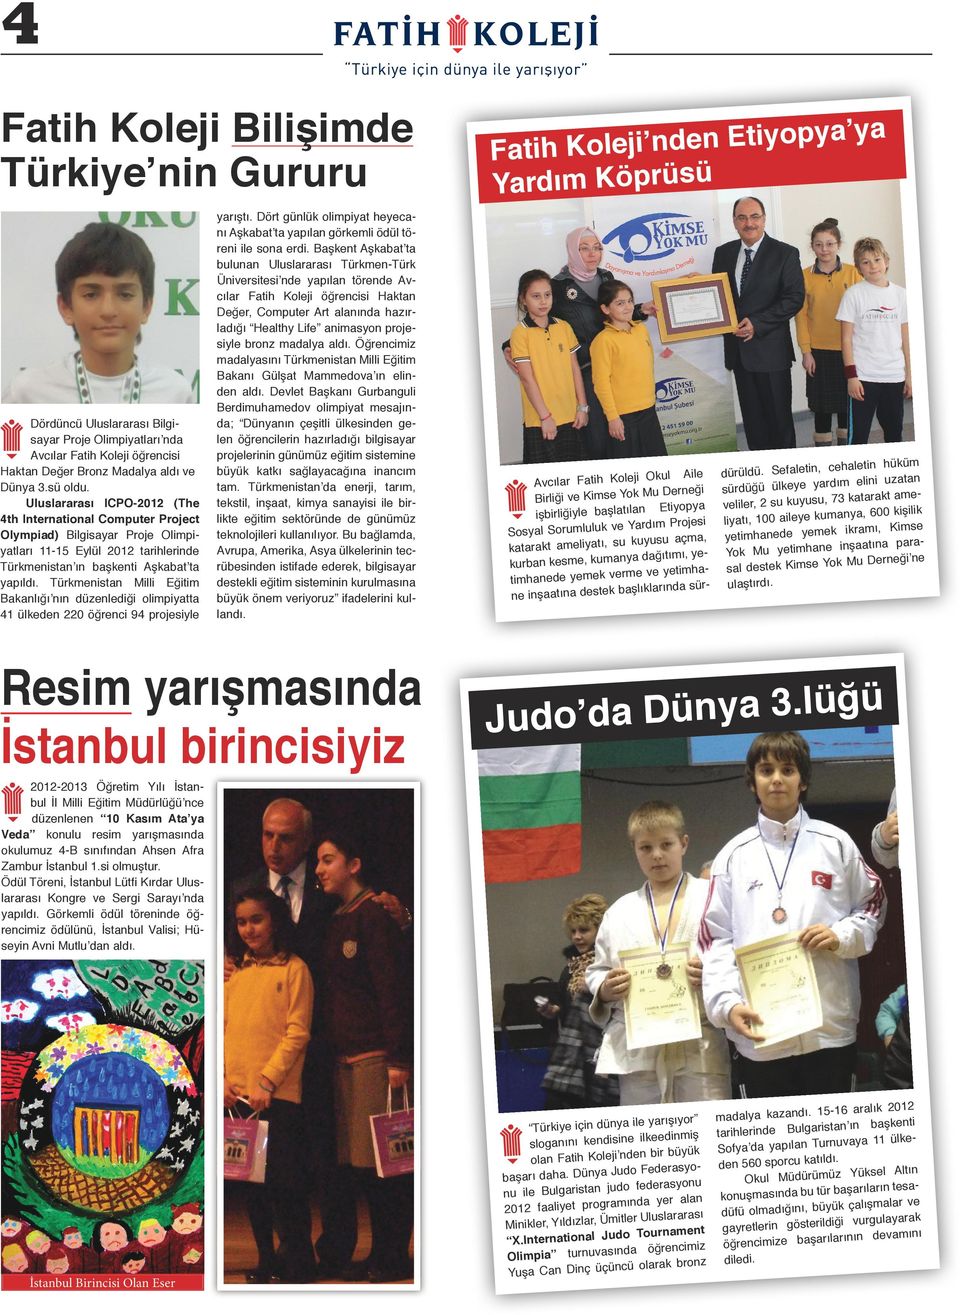 Türkmeist Milli Eğitim Bklığı ı düzelediği olimpiytt 41 ülkede 220 öğreci 94 projesiyle yrıştı. Dört gülük olimpiyt heyecı Aşkbt t ypıl görkemli ödül törei ile so erdi.